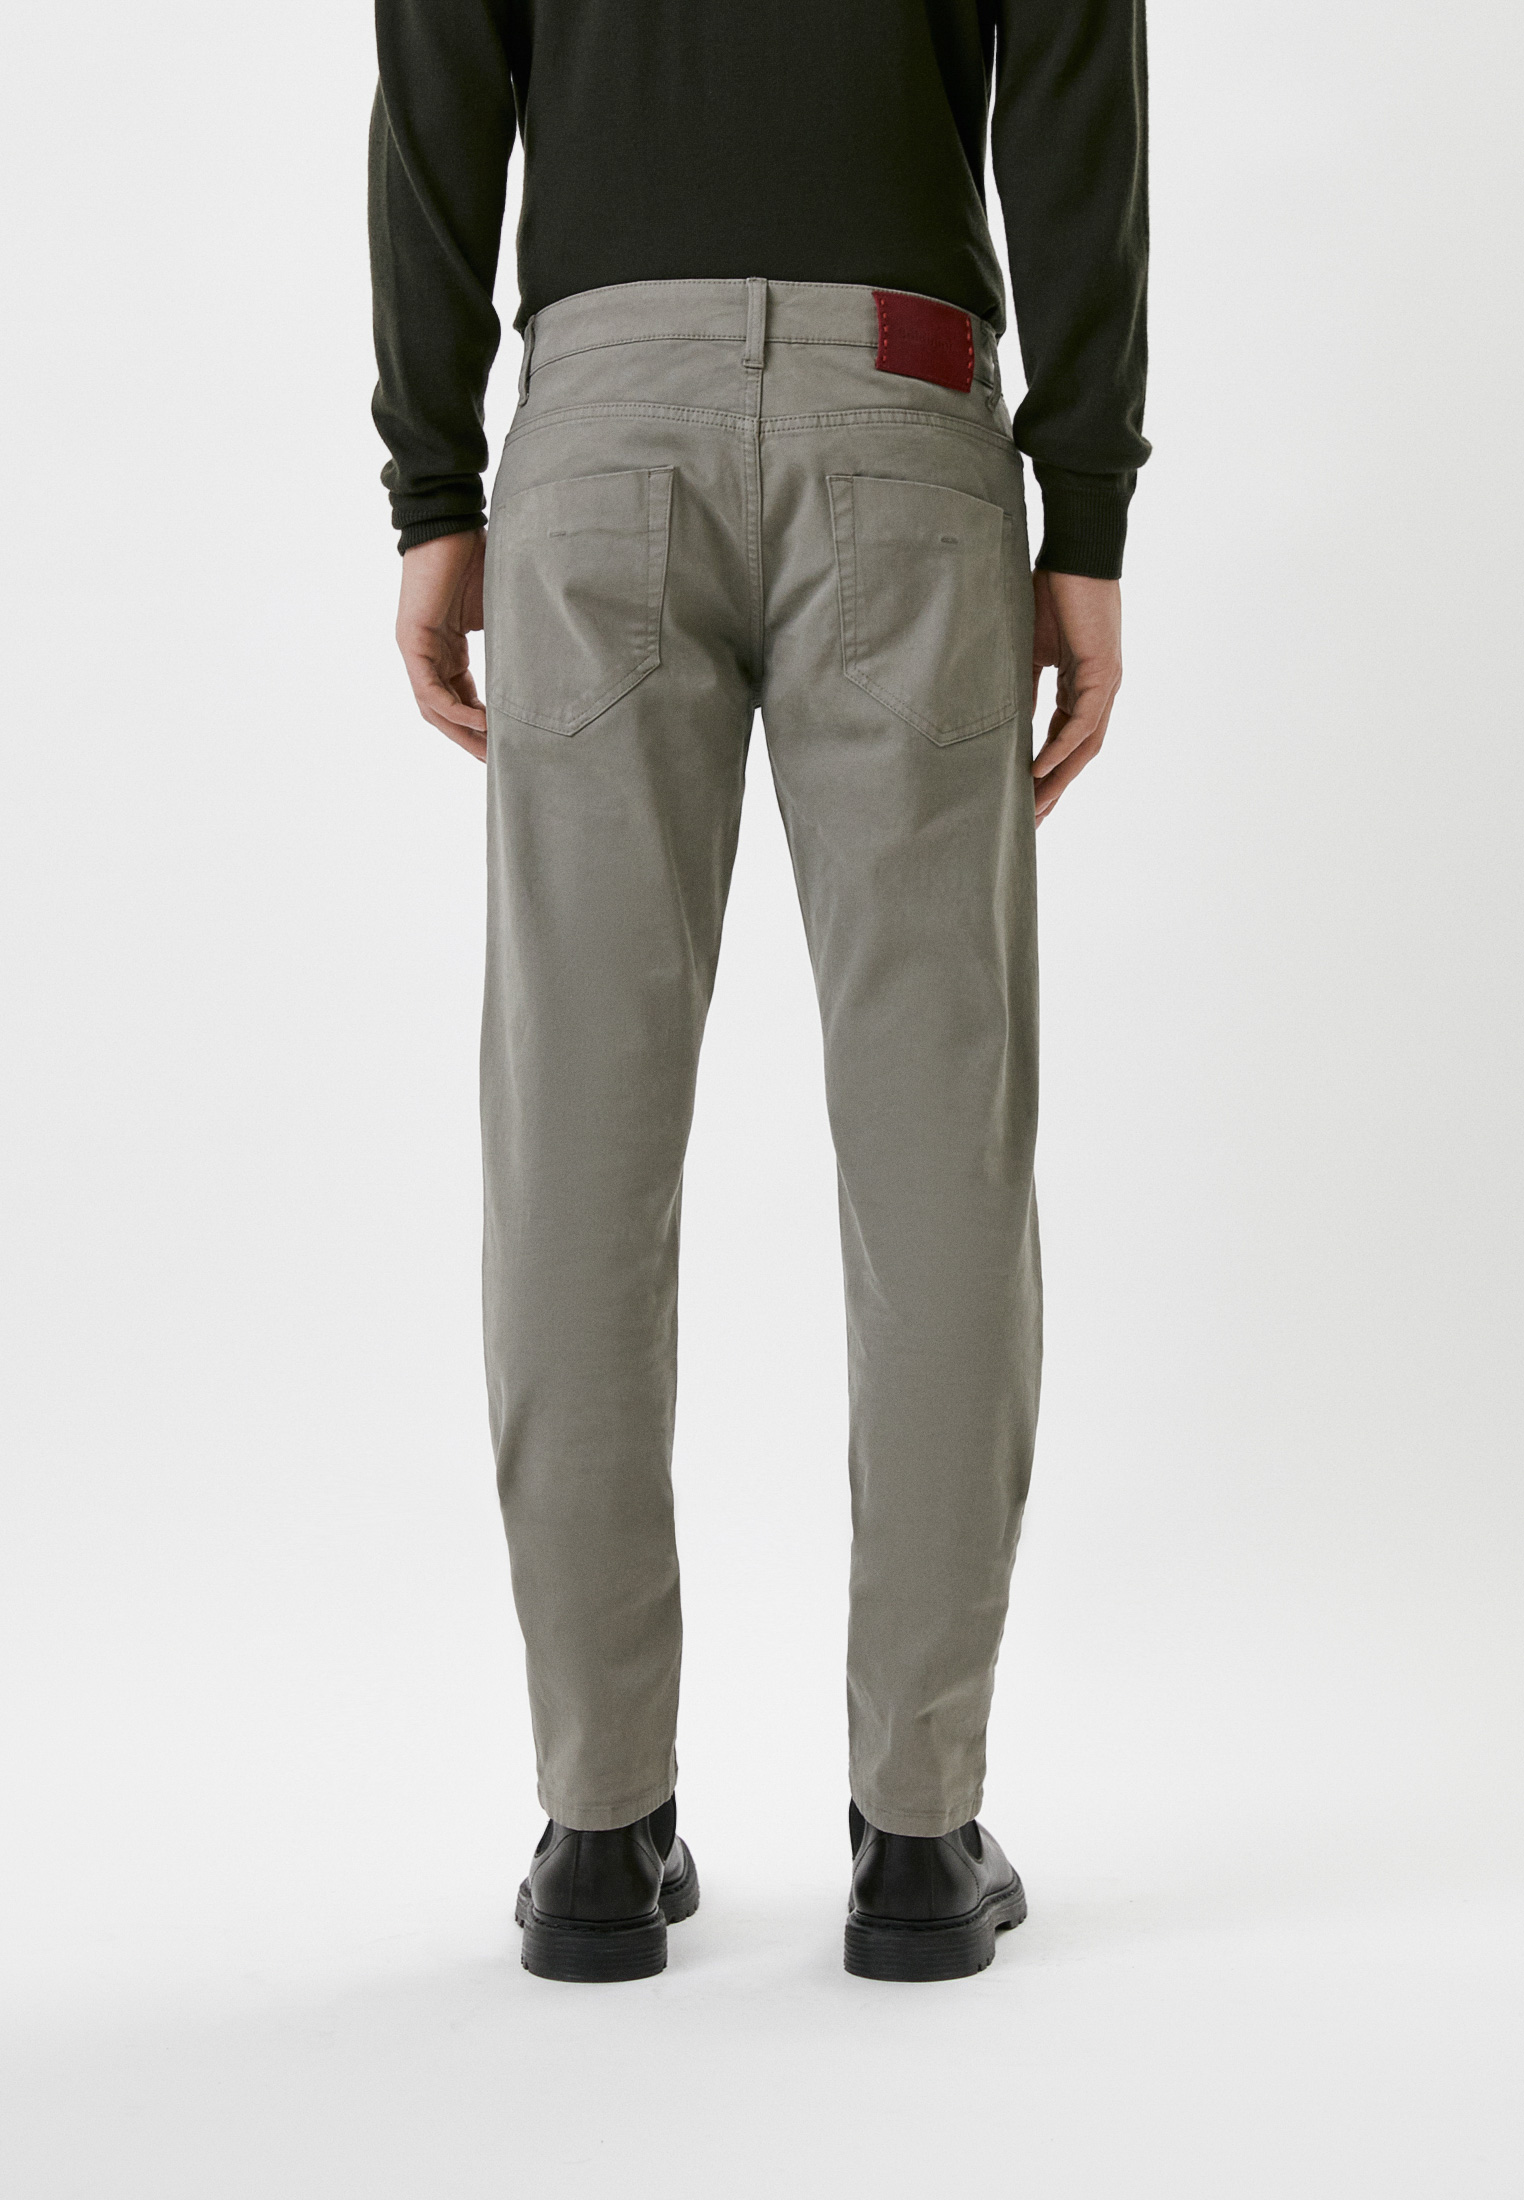 Мужские повседневные брюки Baldinini (Балдинини) M09: изображение 3